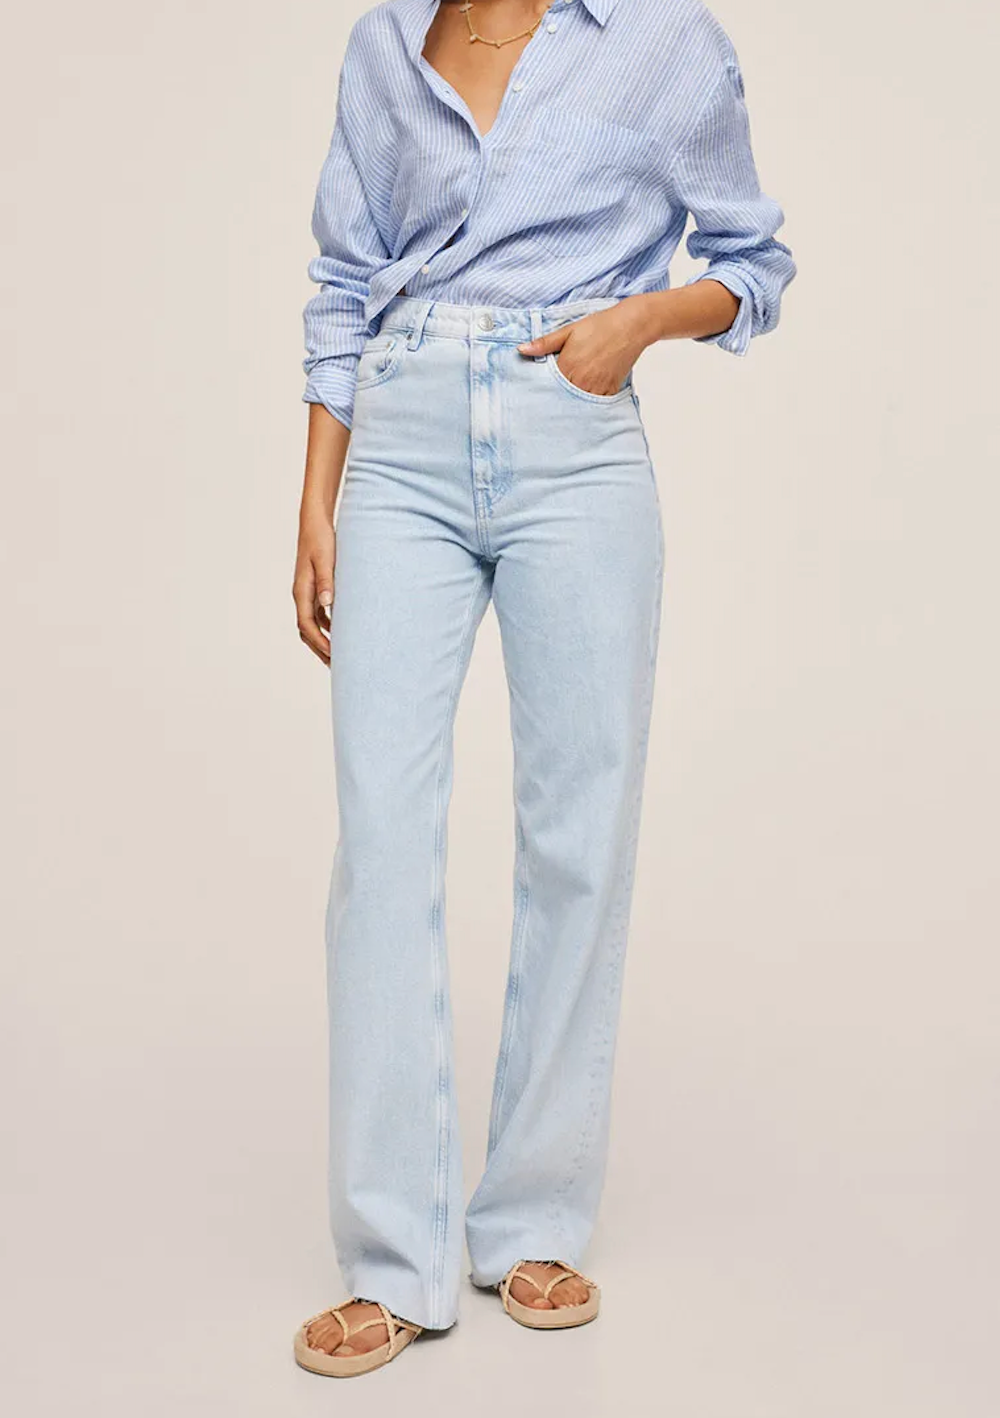 Майкаалкоголичка джинсы и мюли  летний образ от Кендалл Дженнер. Как повторить